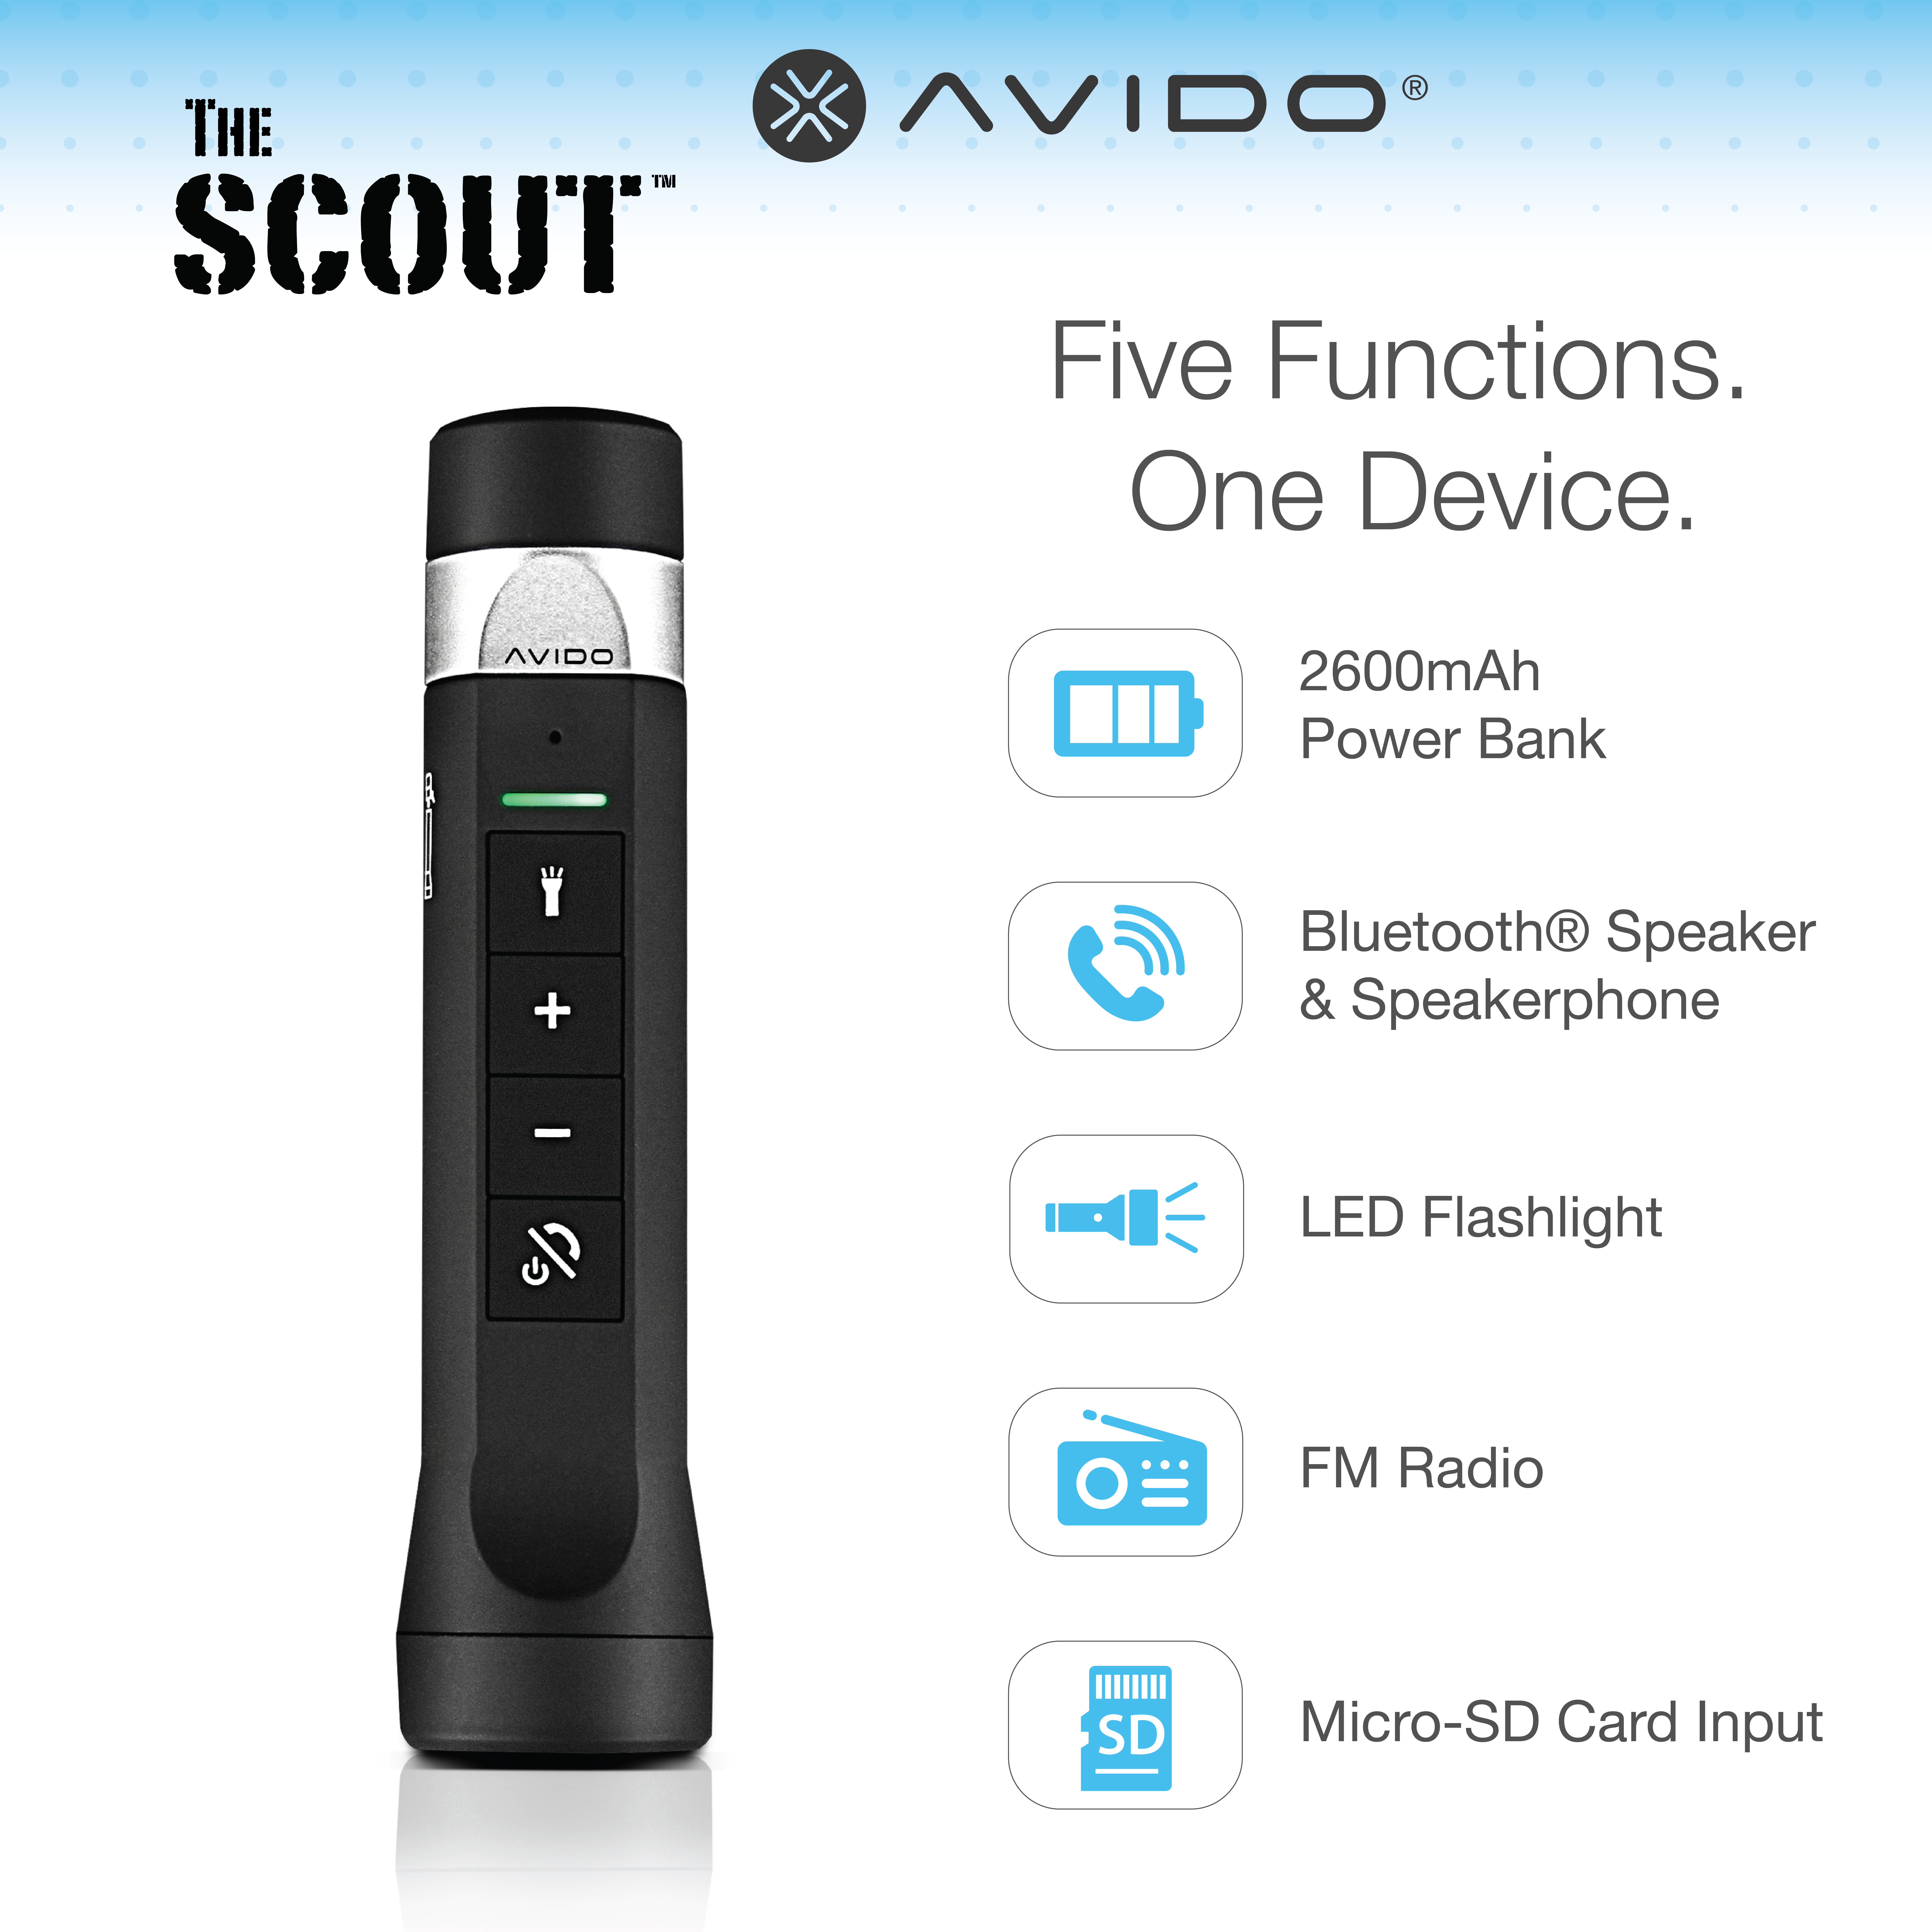 https://avidopower.com/wp-content/uploads/2017/12/Avido-Scout-Overview-01.jpg